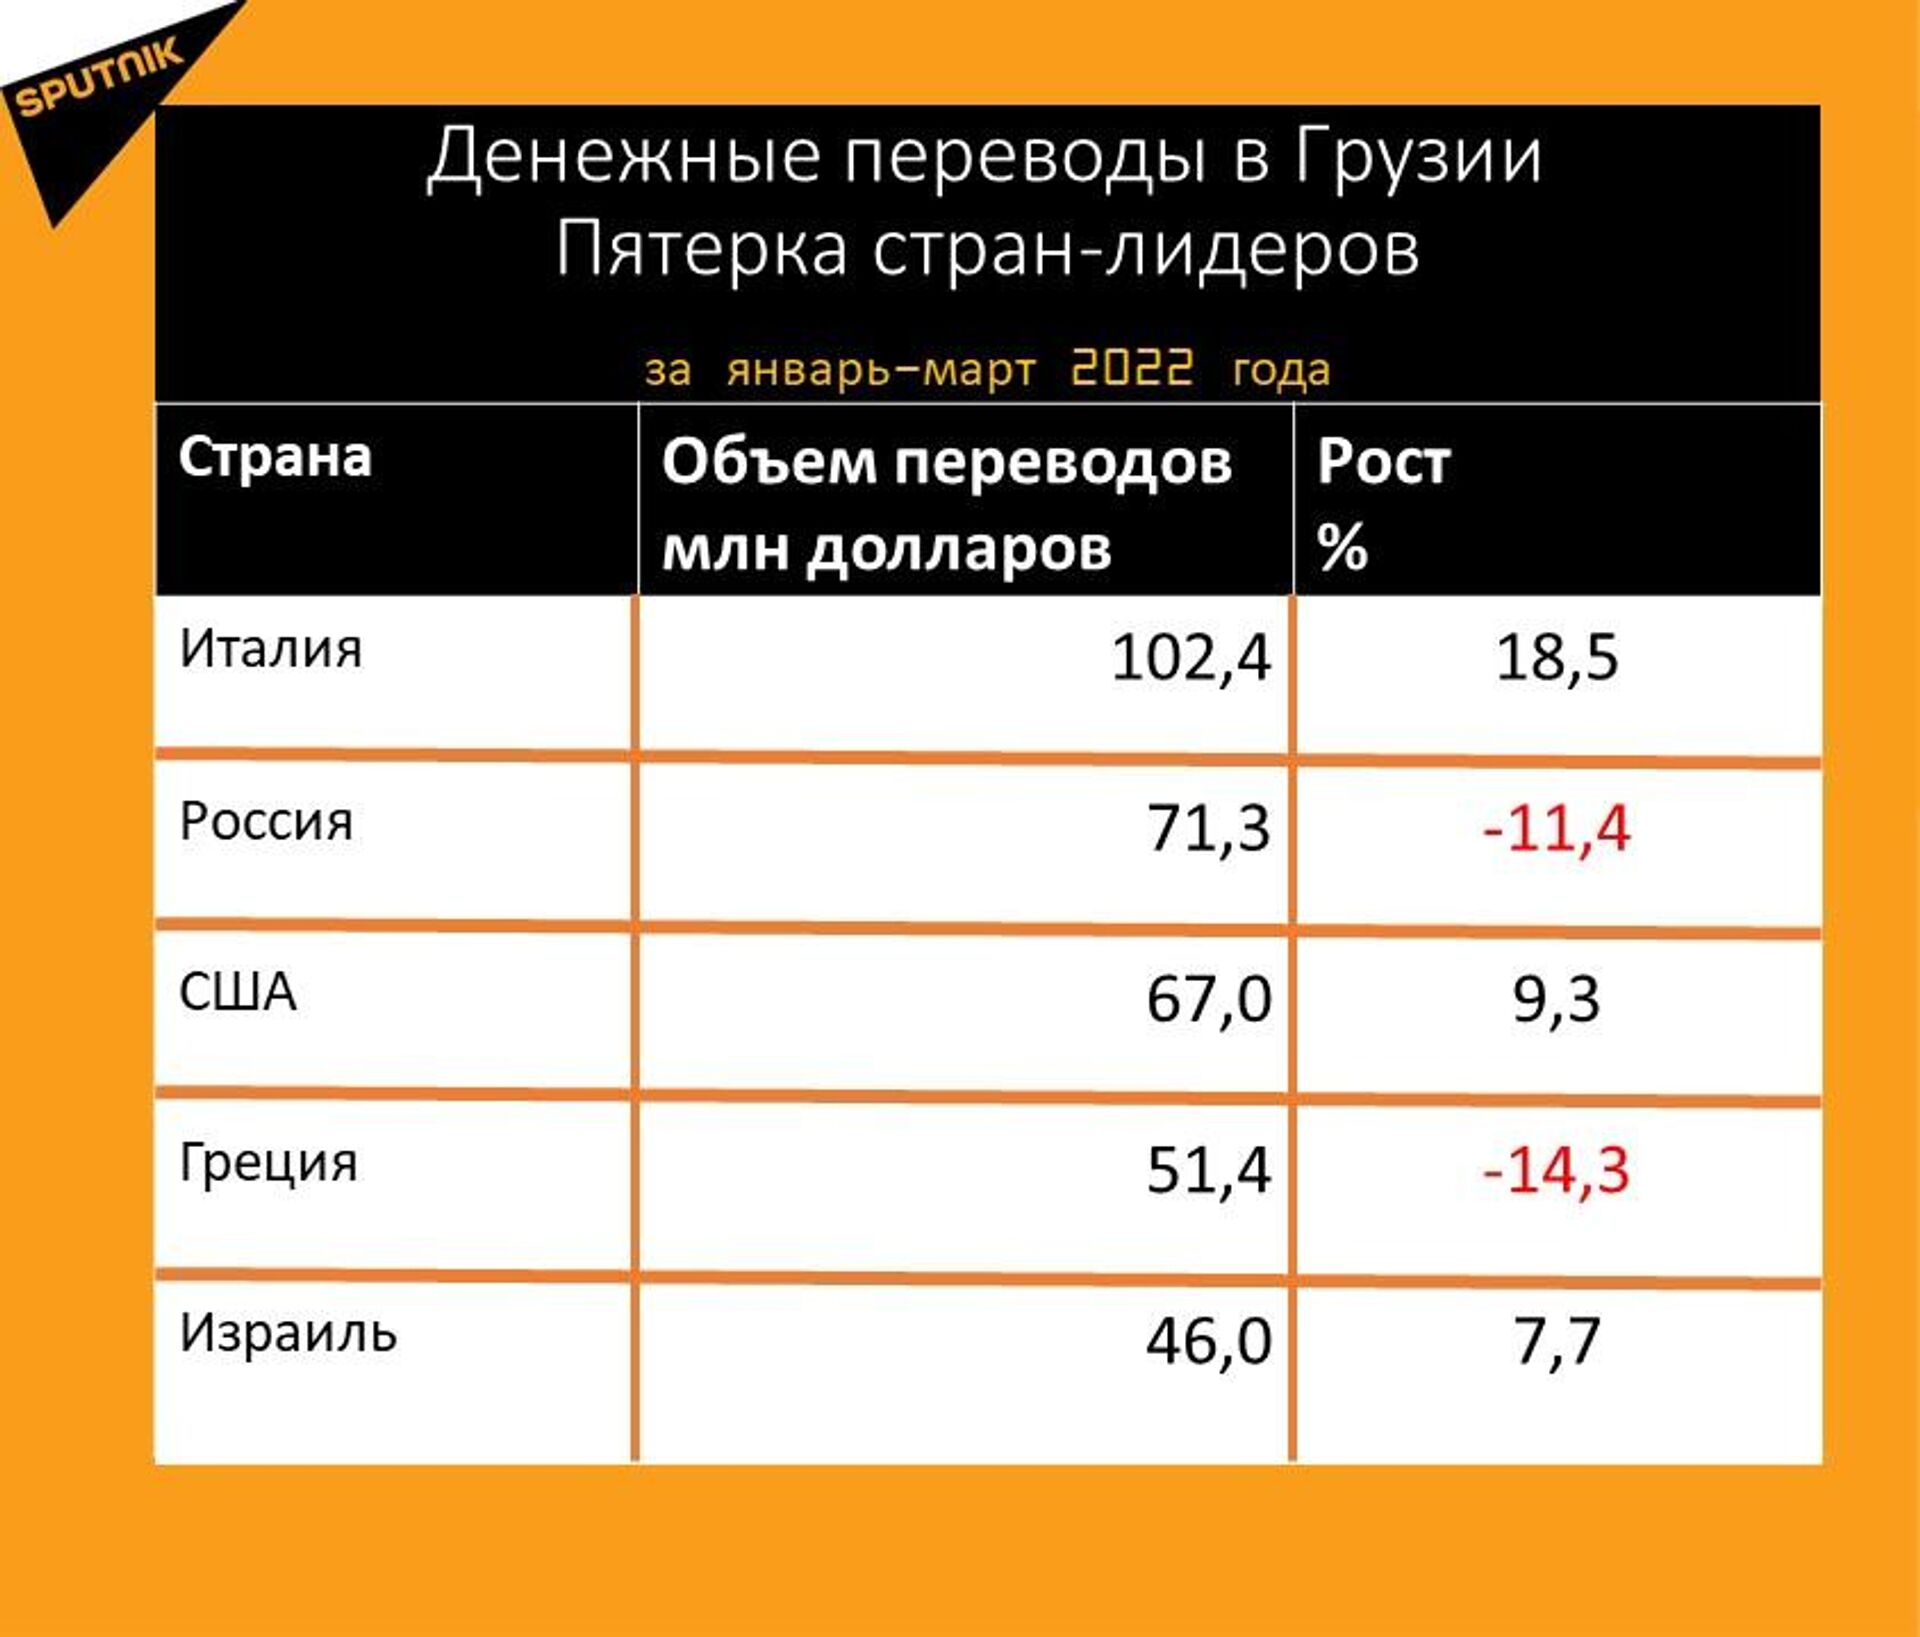 Статистика денежных переводов в Грузию за январь-март 2022 года - Sputnik Грузия, 1920, 15.04.2022